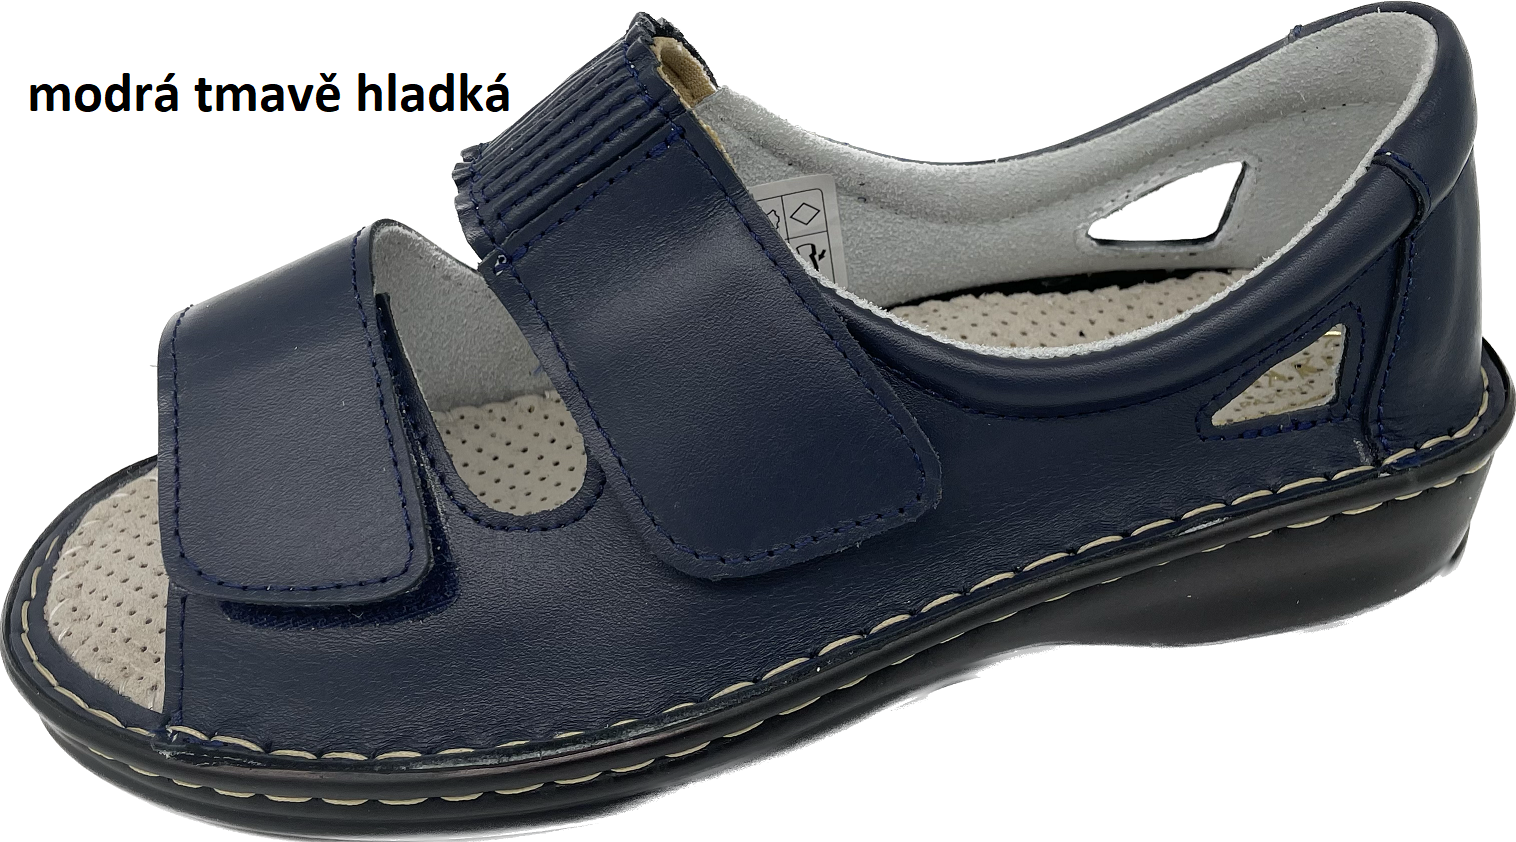 Boty Hanák vzor 306 - černá podešev Barva usně: modrá tmavě hladká, Velikosti obuvi: 36